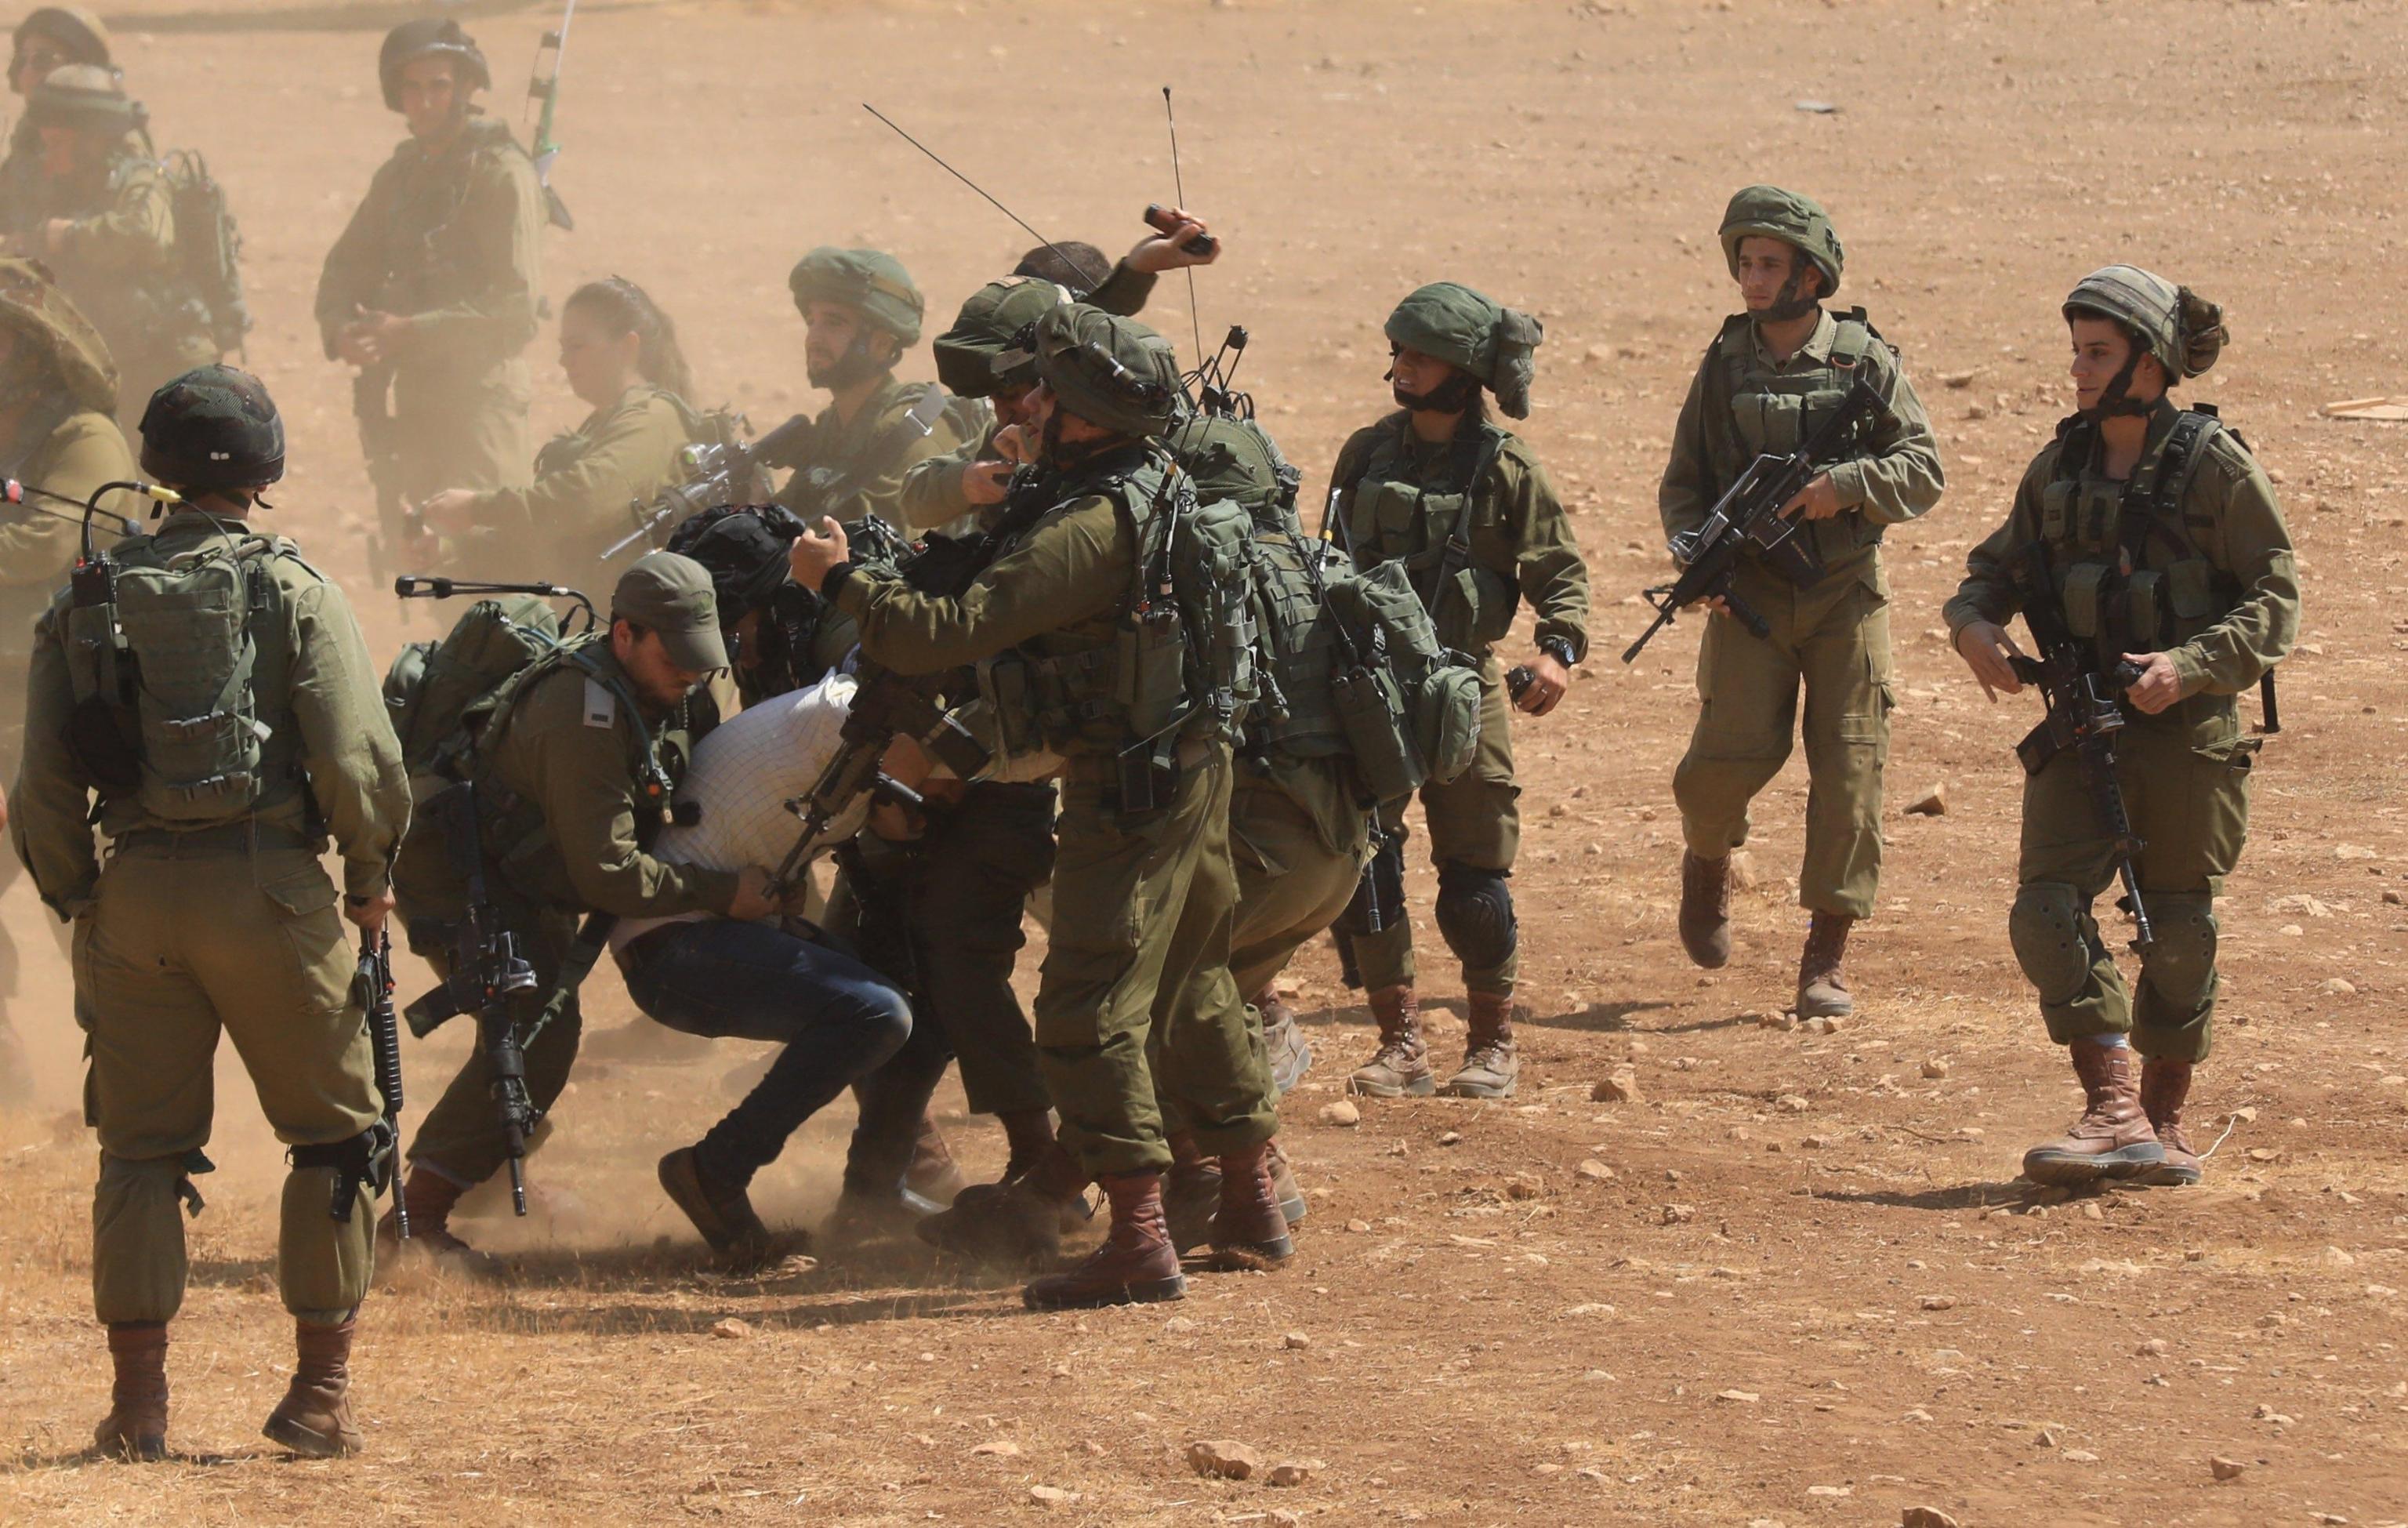 Scontri fra palestinesi e soldati israeliani in Cisgiordania